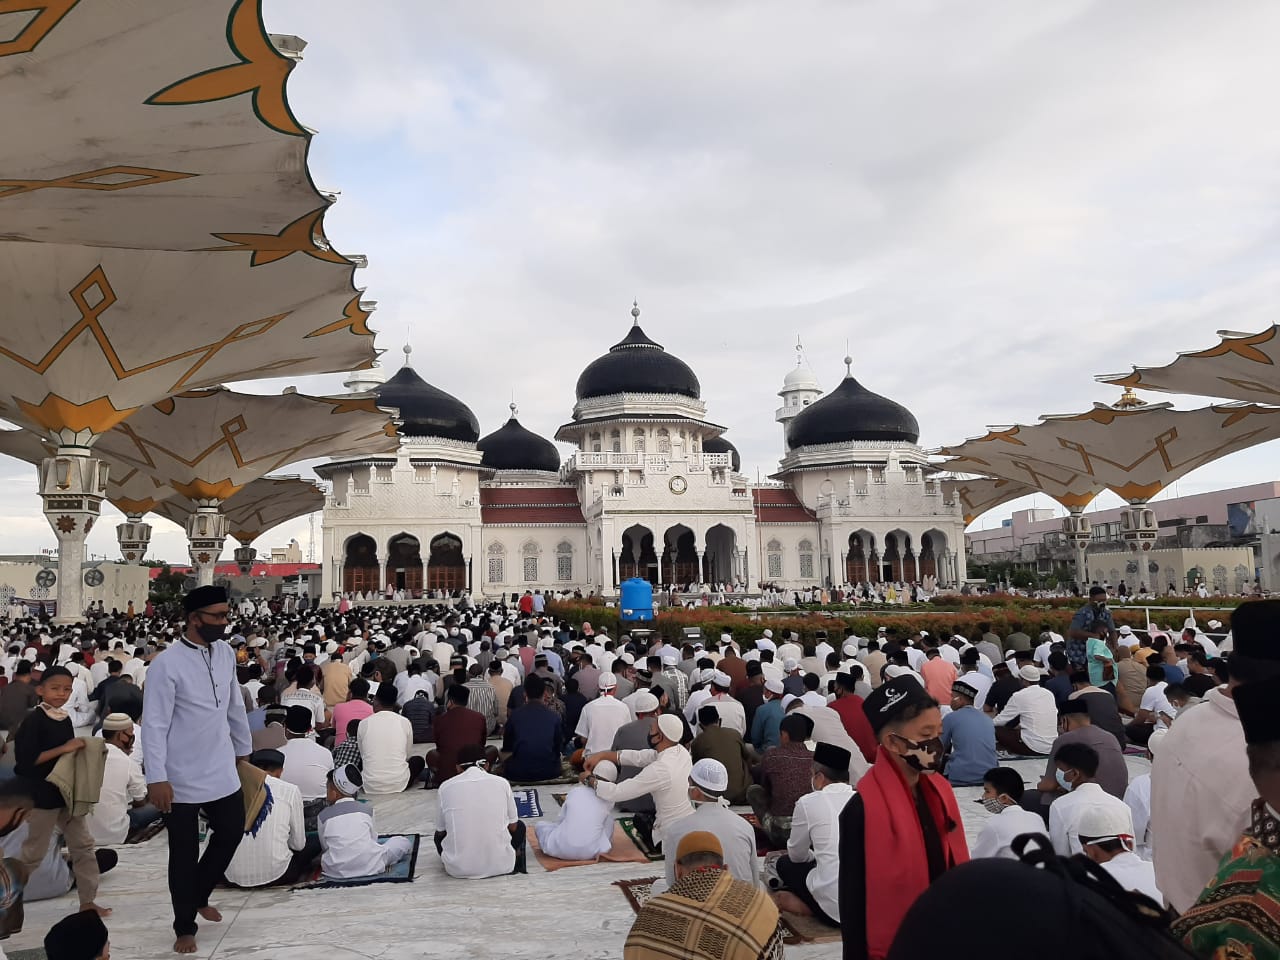 Aceh ada 14 Daerah Bisa Berlakukan New Normal